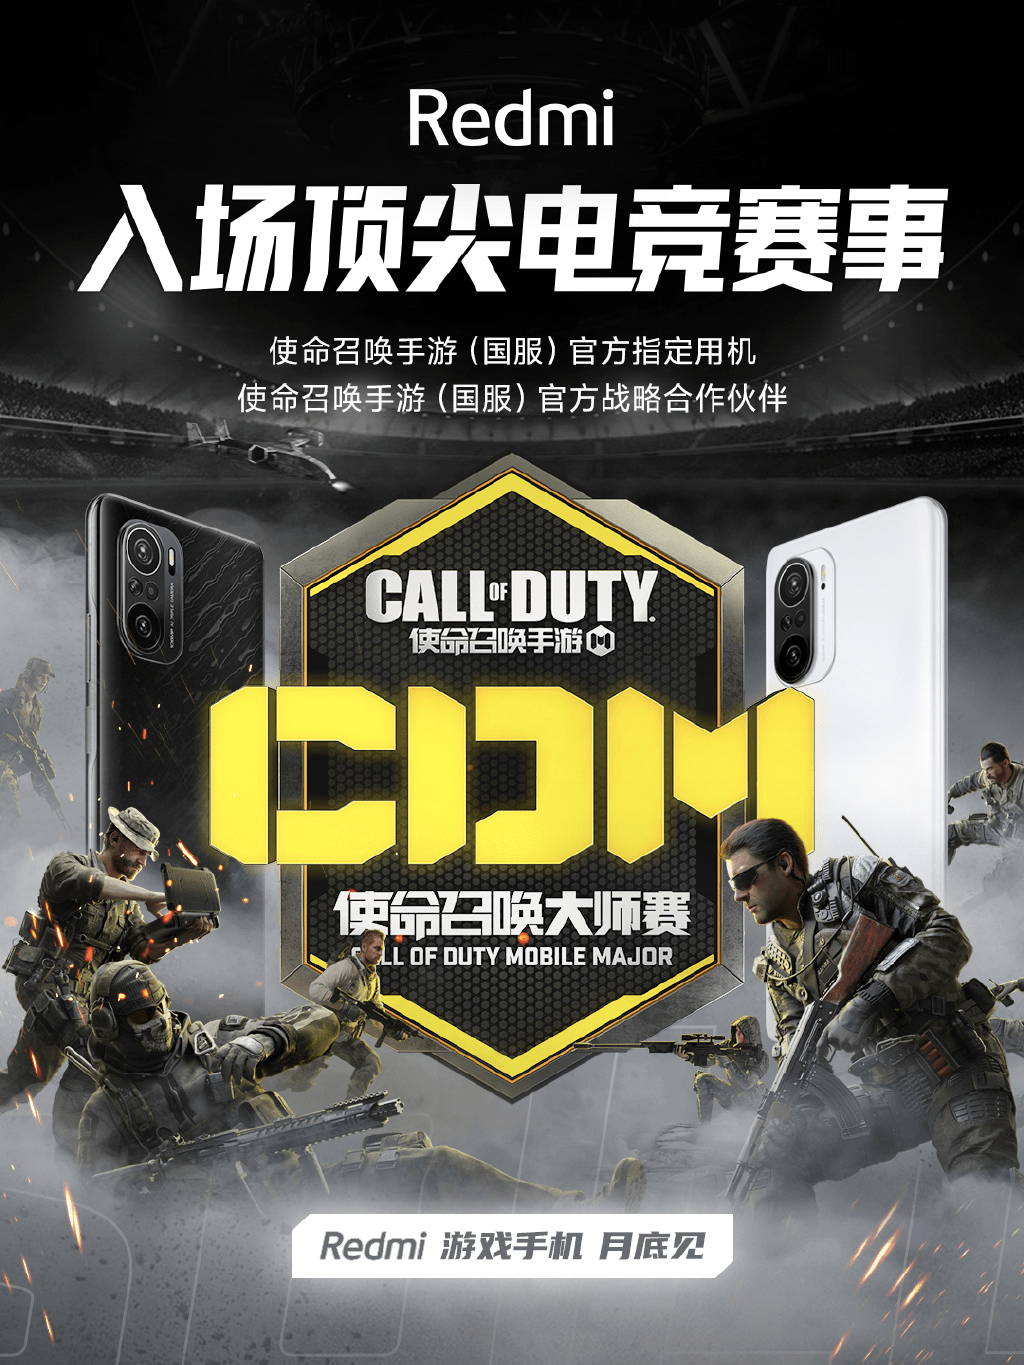 Redmi K40 будет официальным смартфоном Call of Duty Mobile